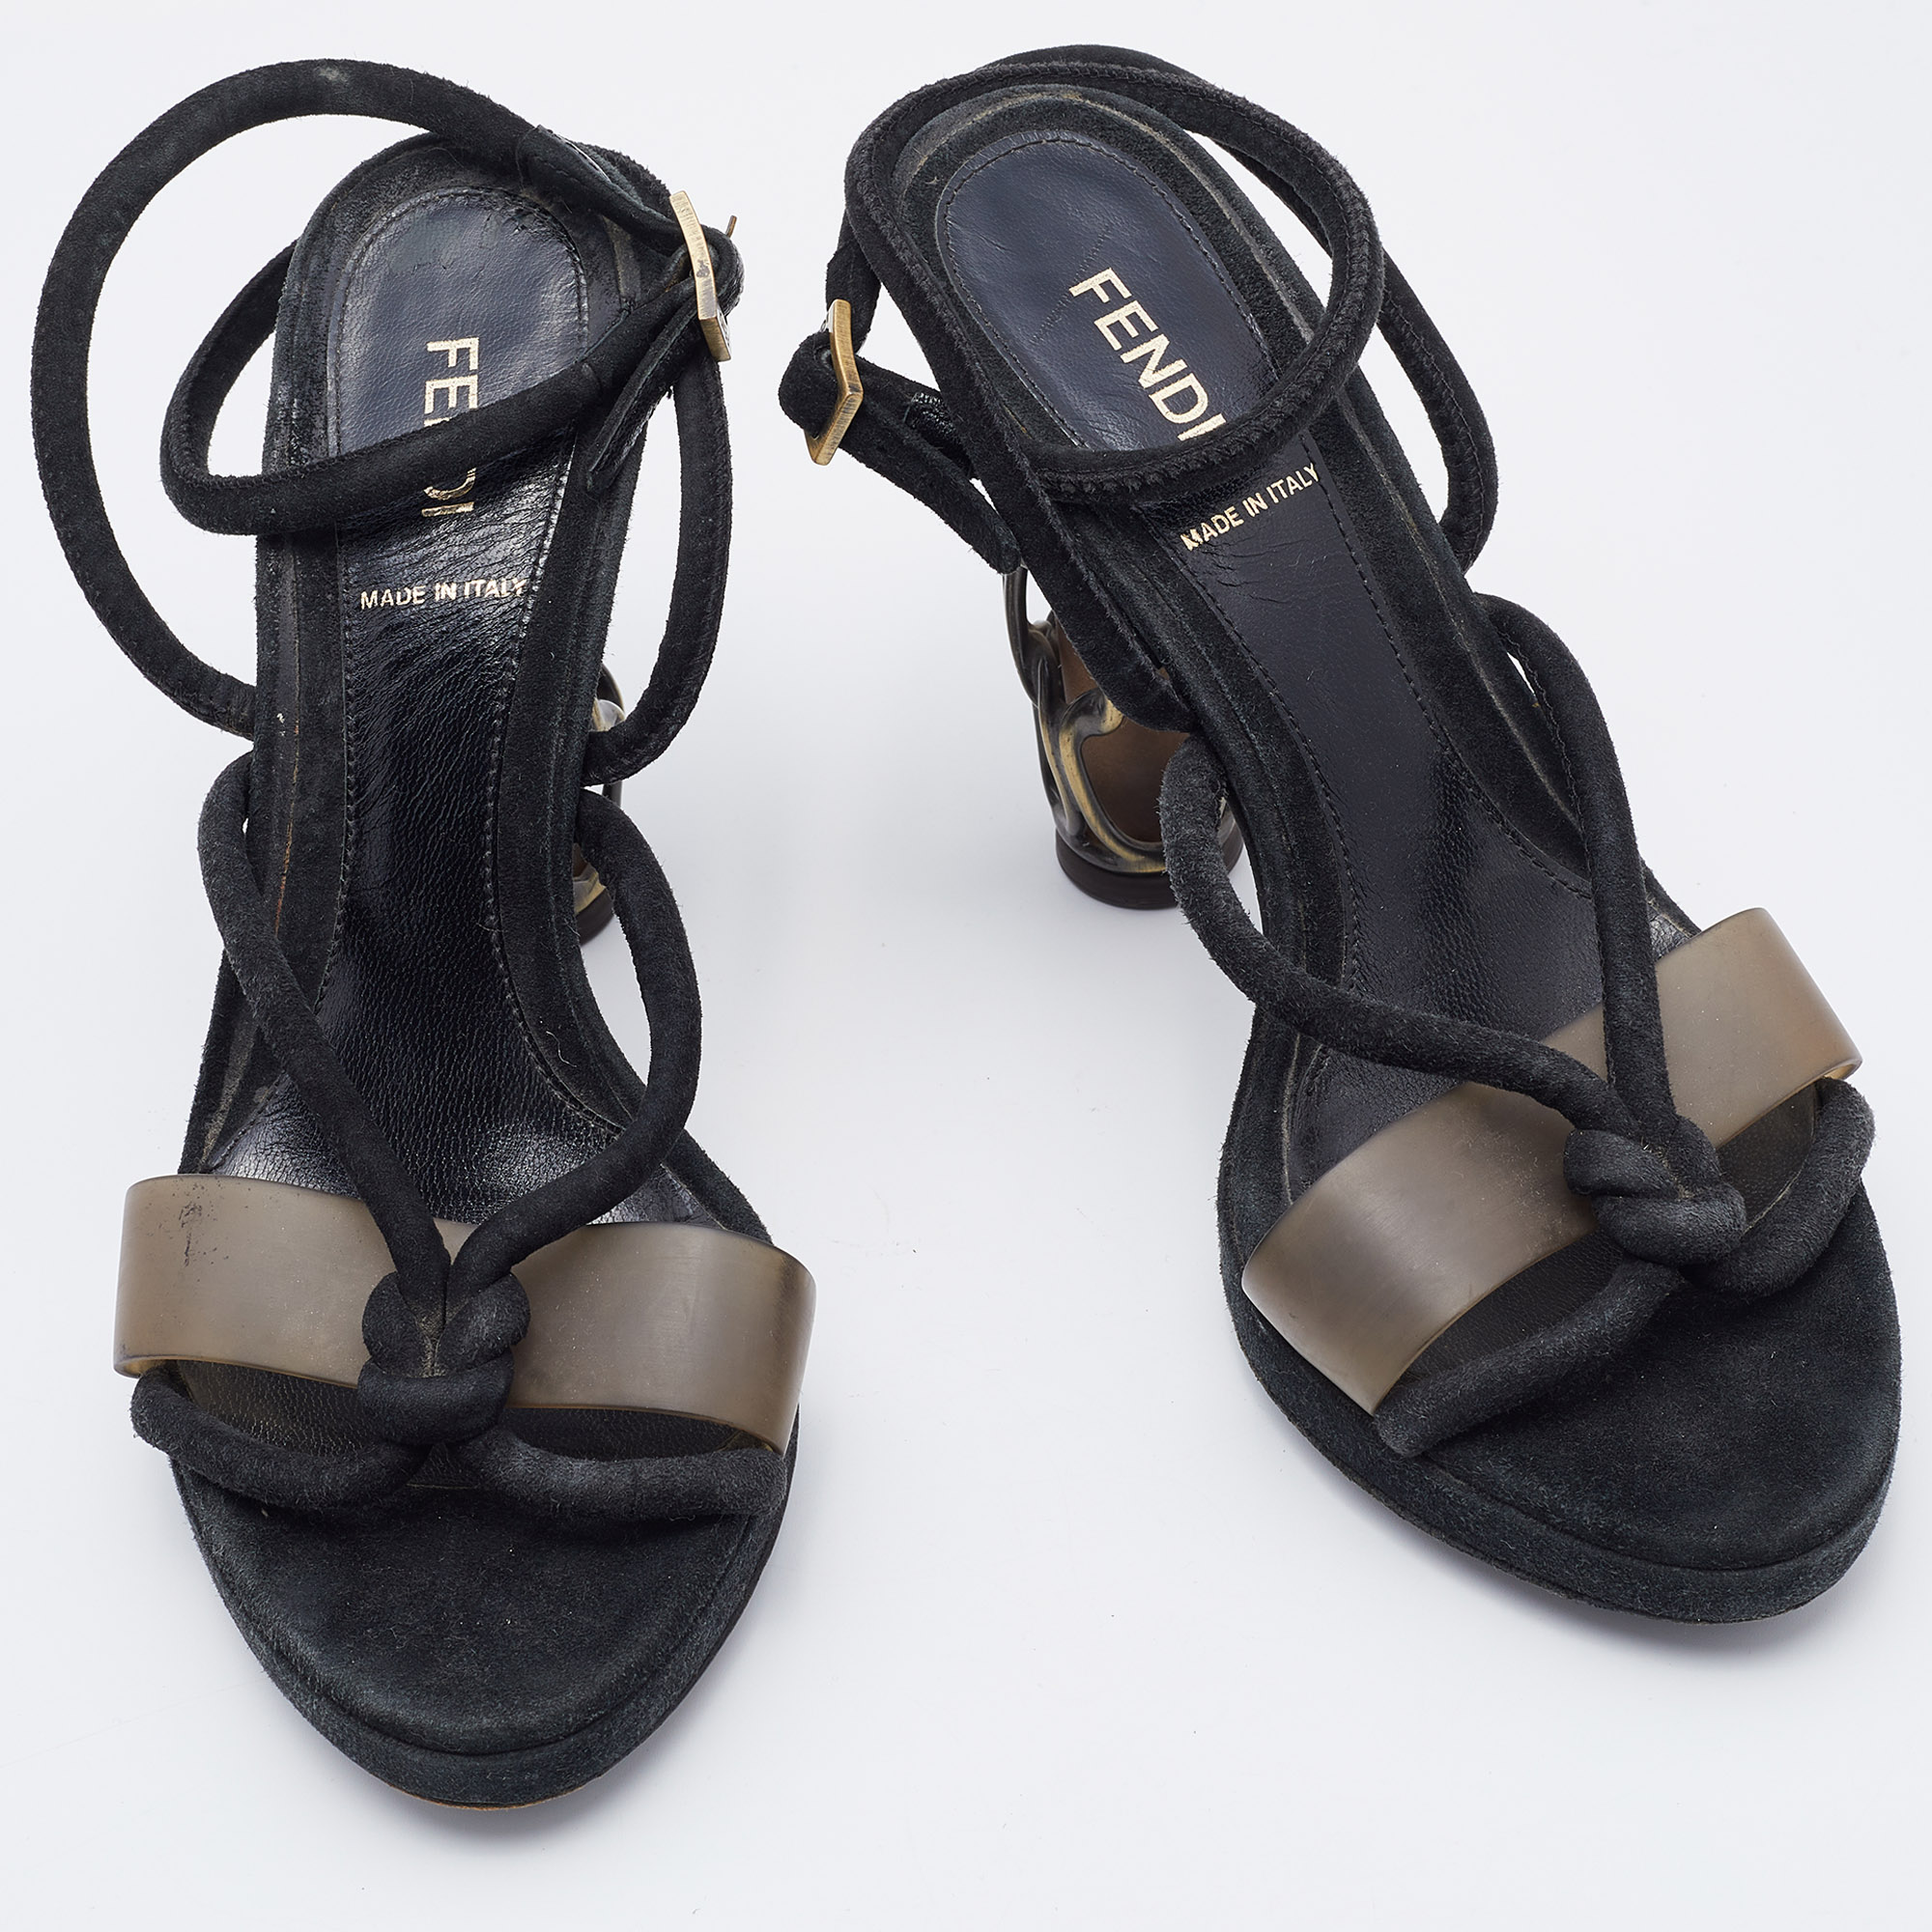 Fendi Black Suede Metal Caged Heel Ankle Strap Platform Sandals Size 37